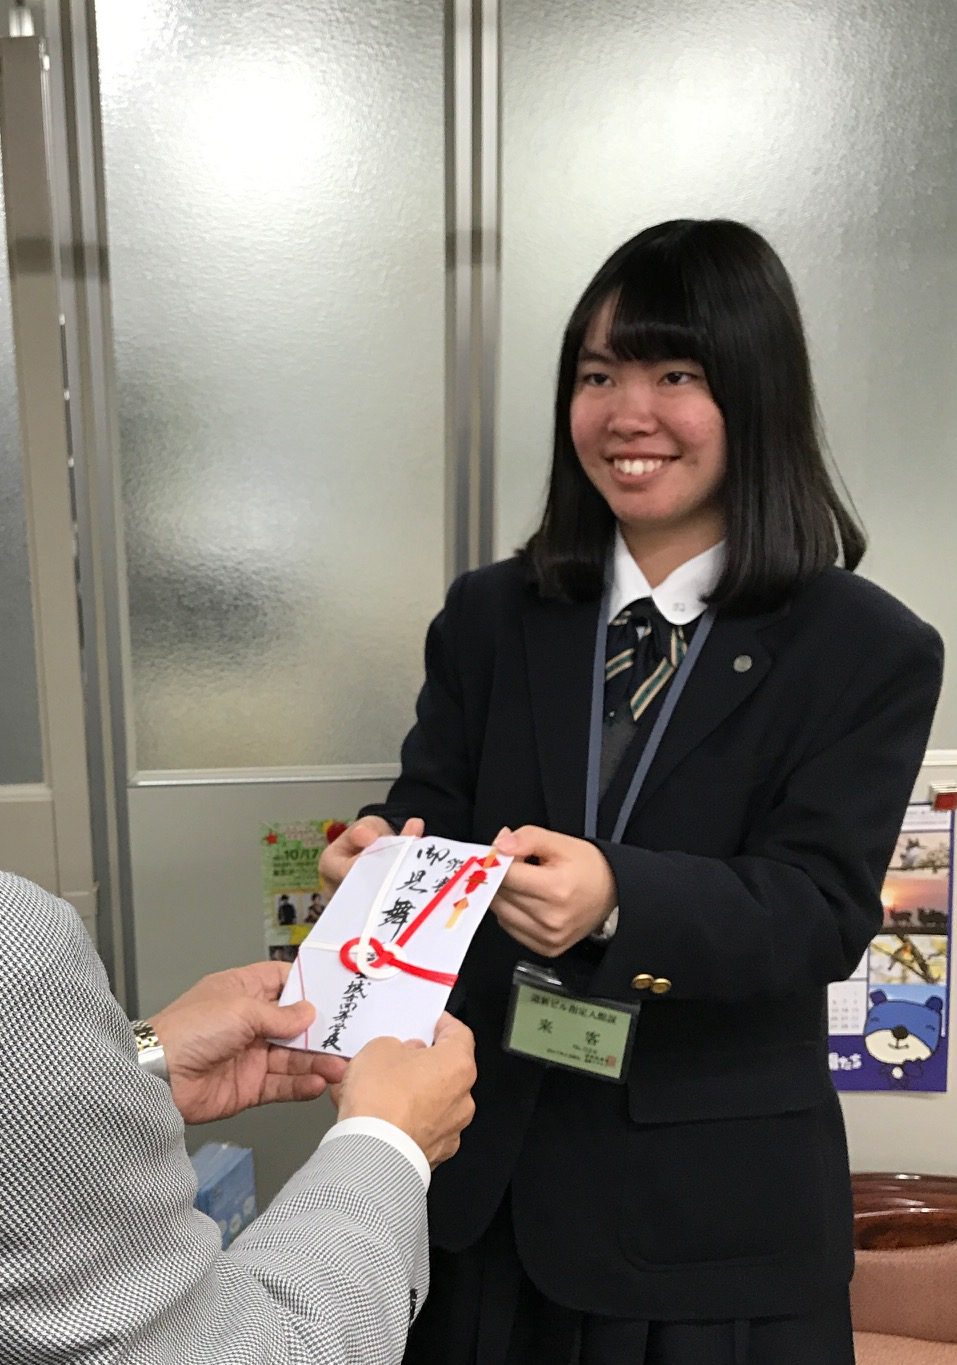 神戸星城高校が修学旅行中に義援金寄付 北海道新聞社会福祉振興基金